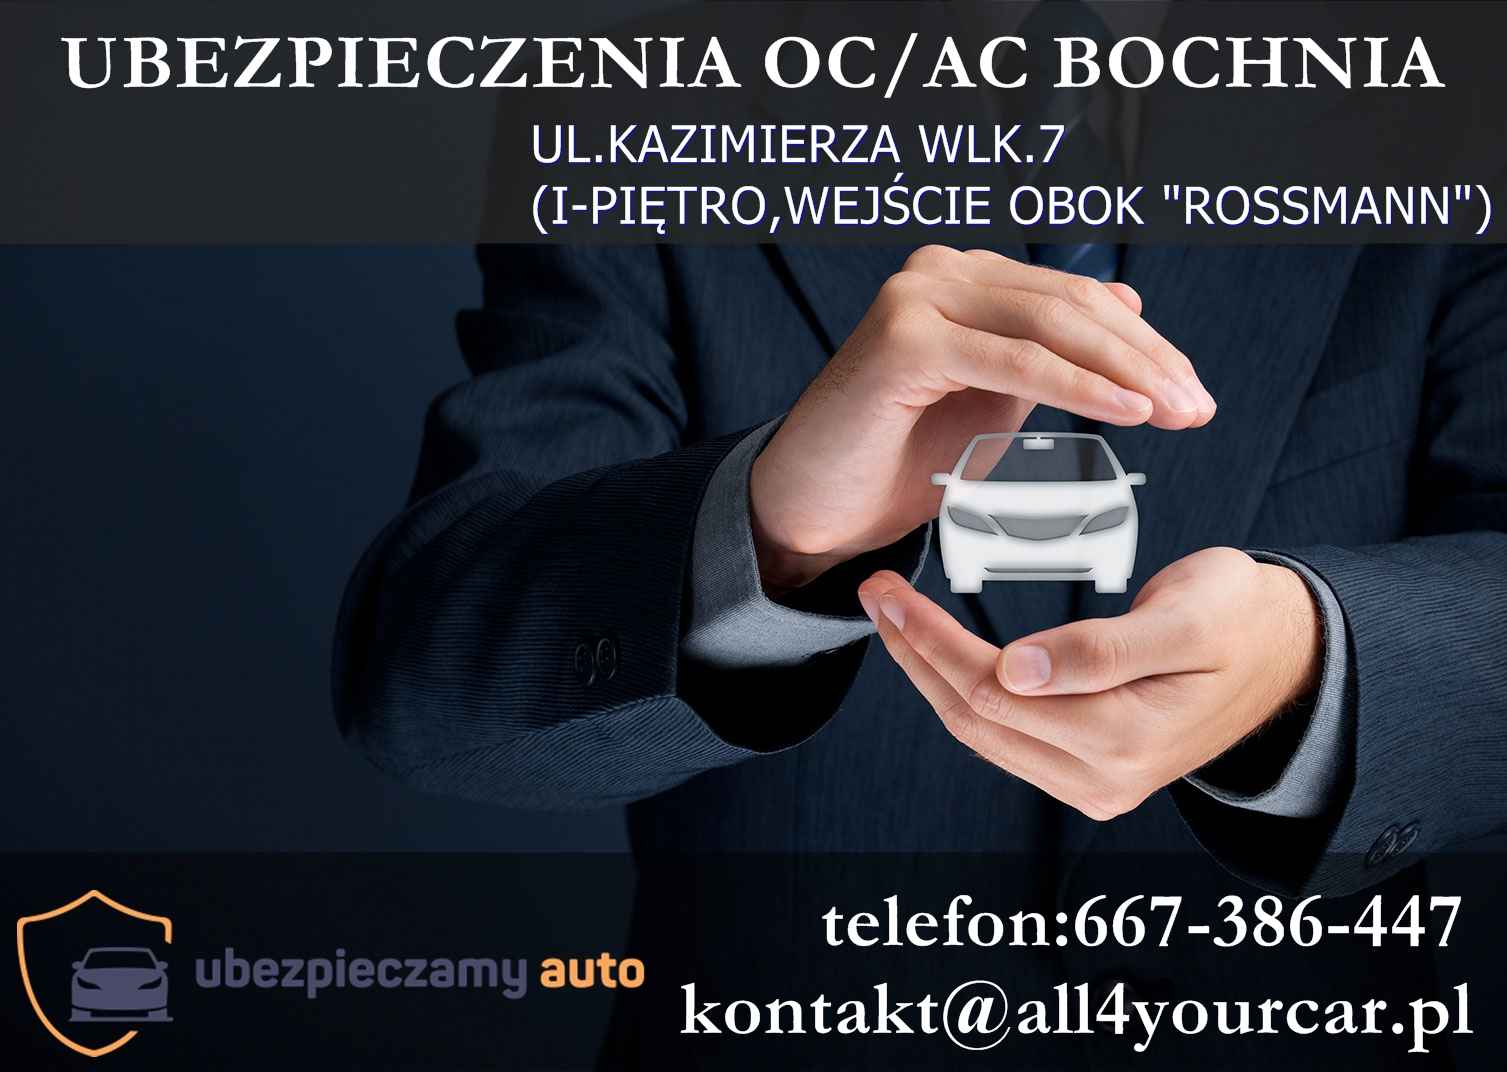 Rejestracja pojazdów AKCYZA Wydział komunikacji Ubezpieczenia OC/AC Bochnia - zdjęcie 4